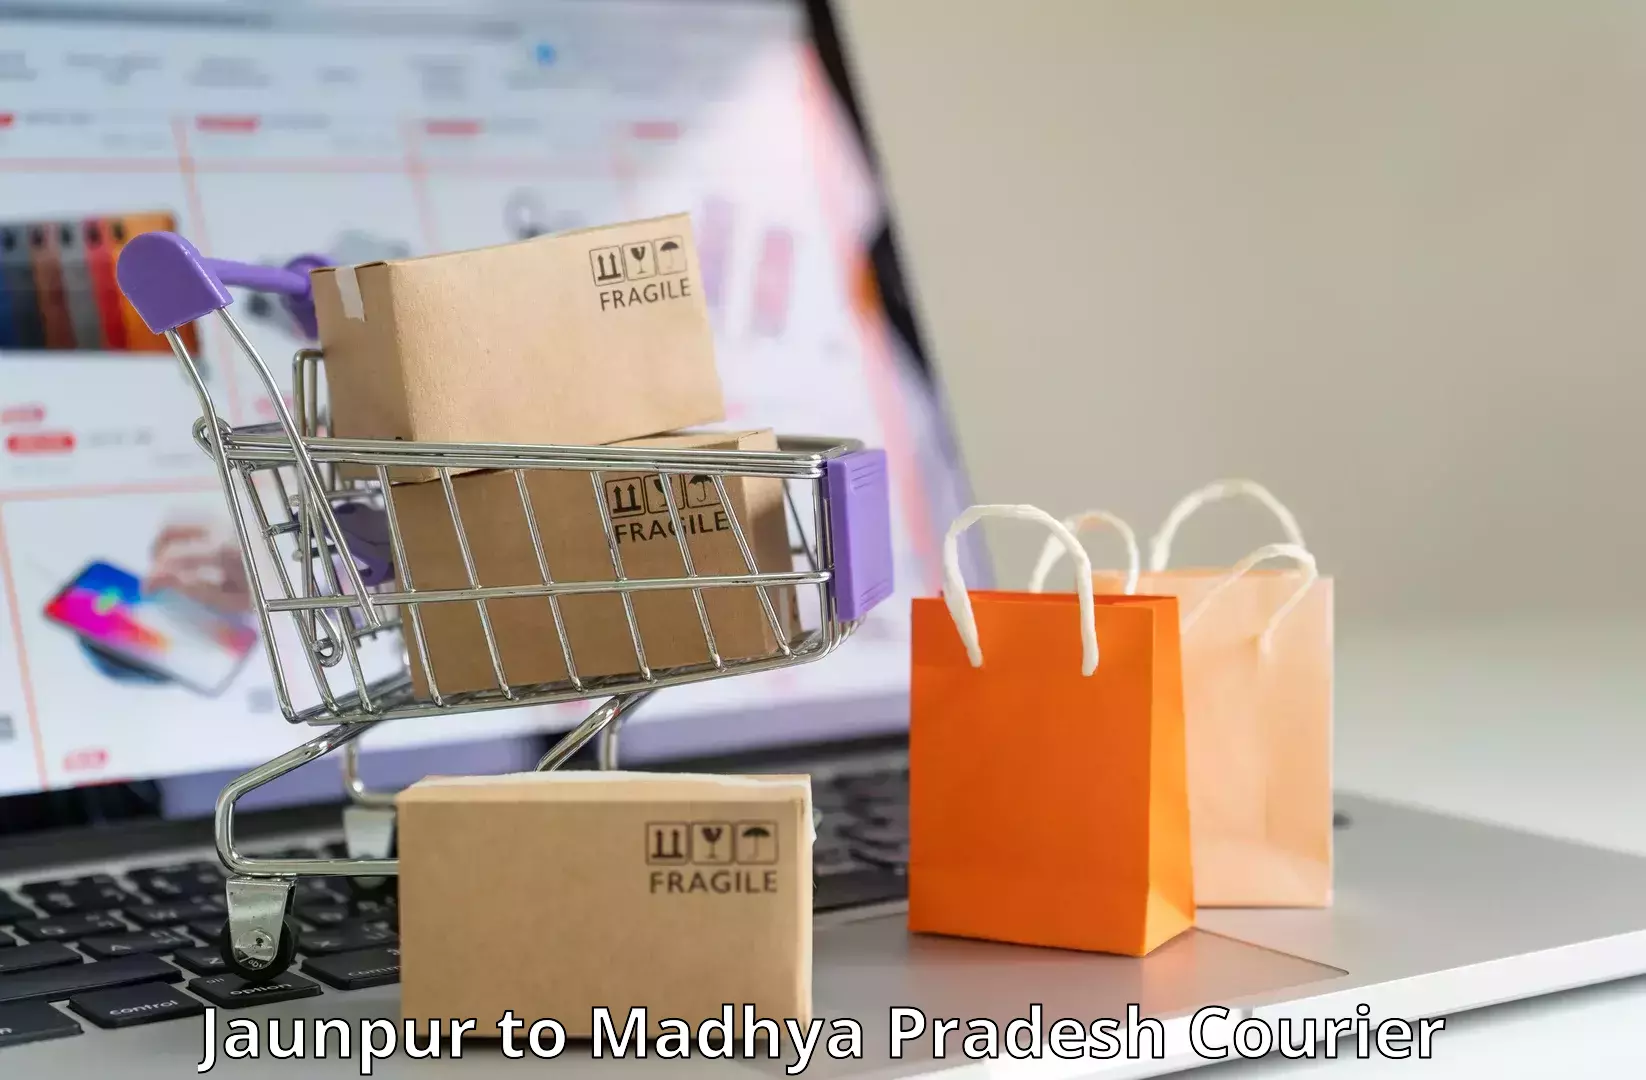 Urgent courier needs Jaunpur to Madhya Pradesh